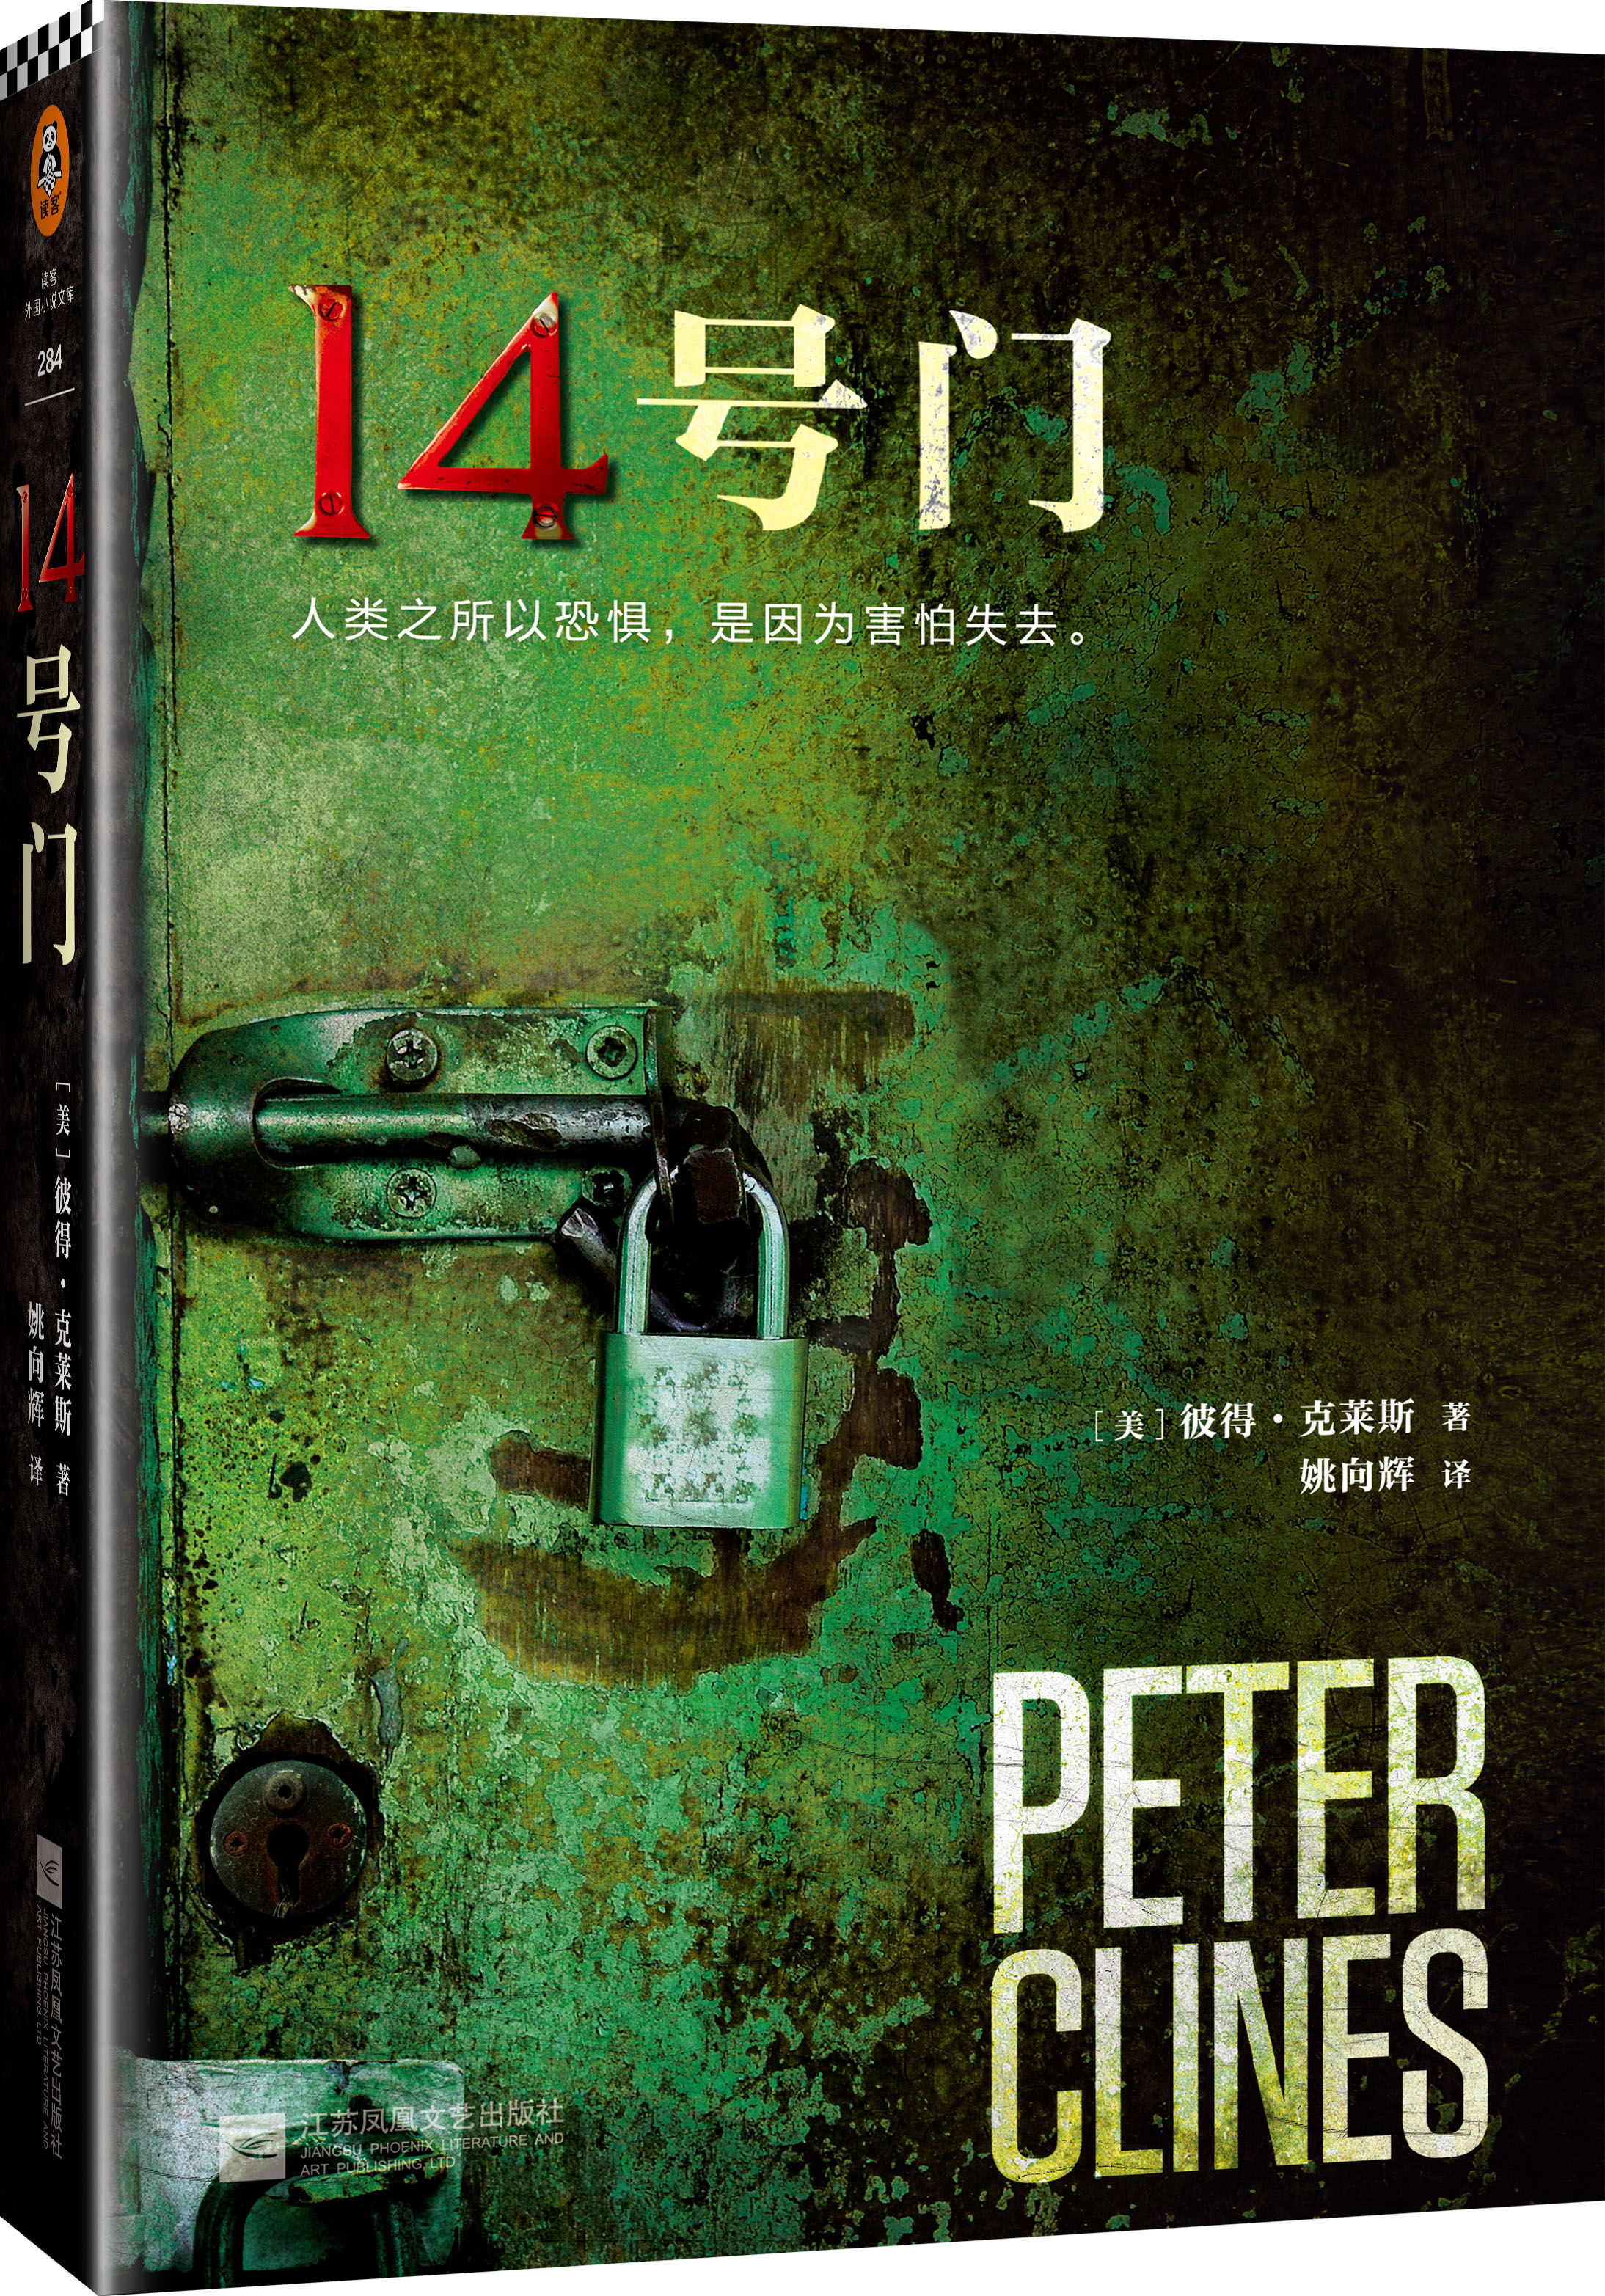 《14号门》彼得·克莱斯著 外国小说人类之所以恐惧是因为害怕失去 外国文学小说 惊悚恐怖悬疑侦探推理小说 科幻玄幻长篇小说书籍